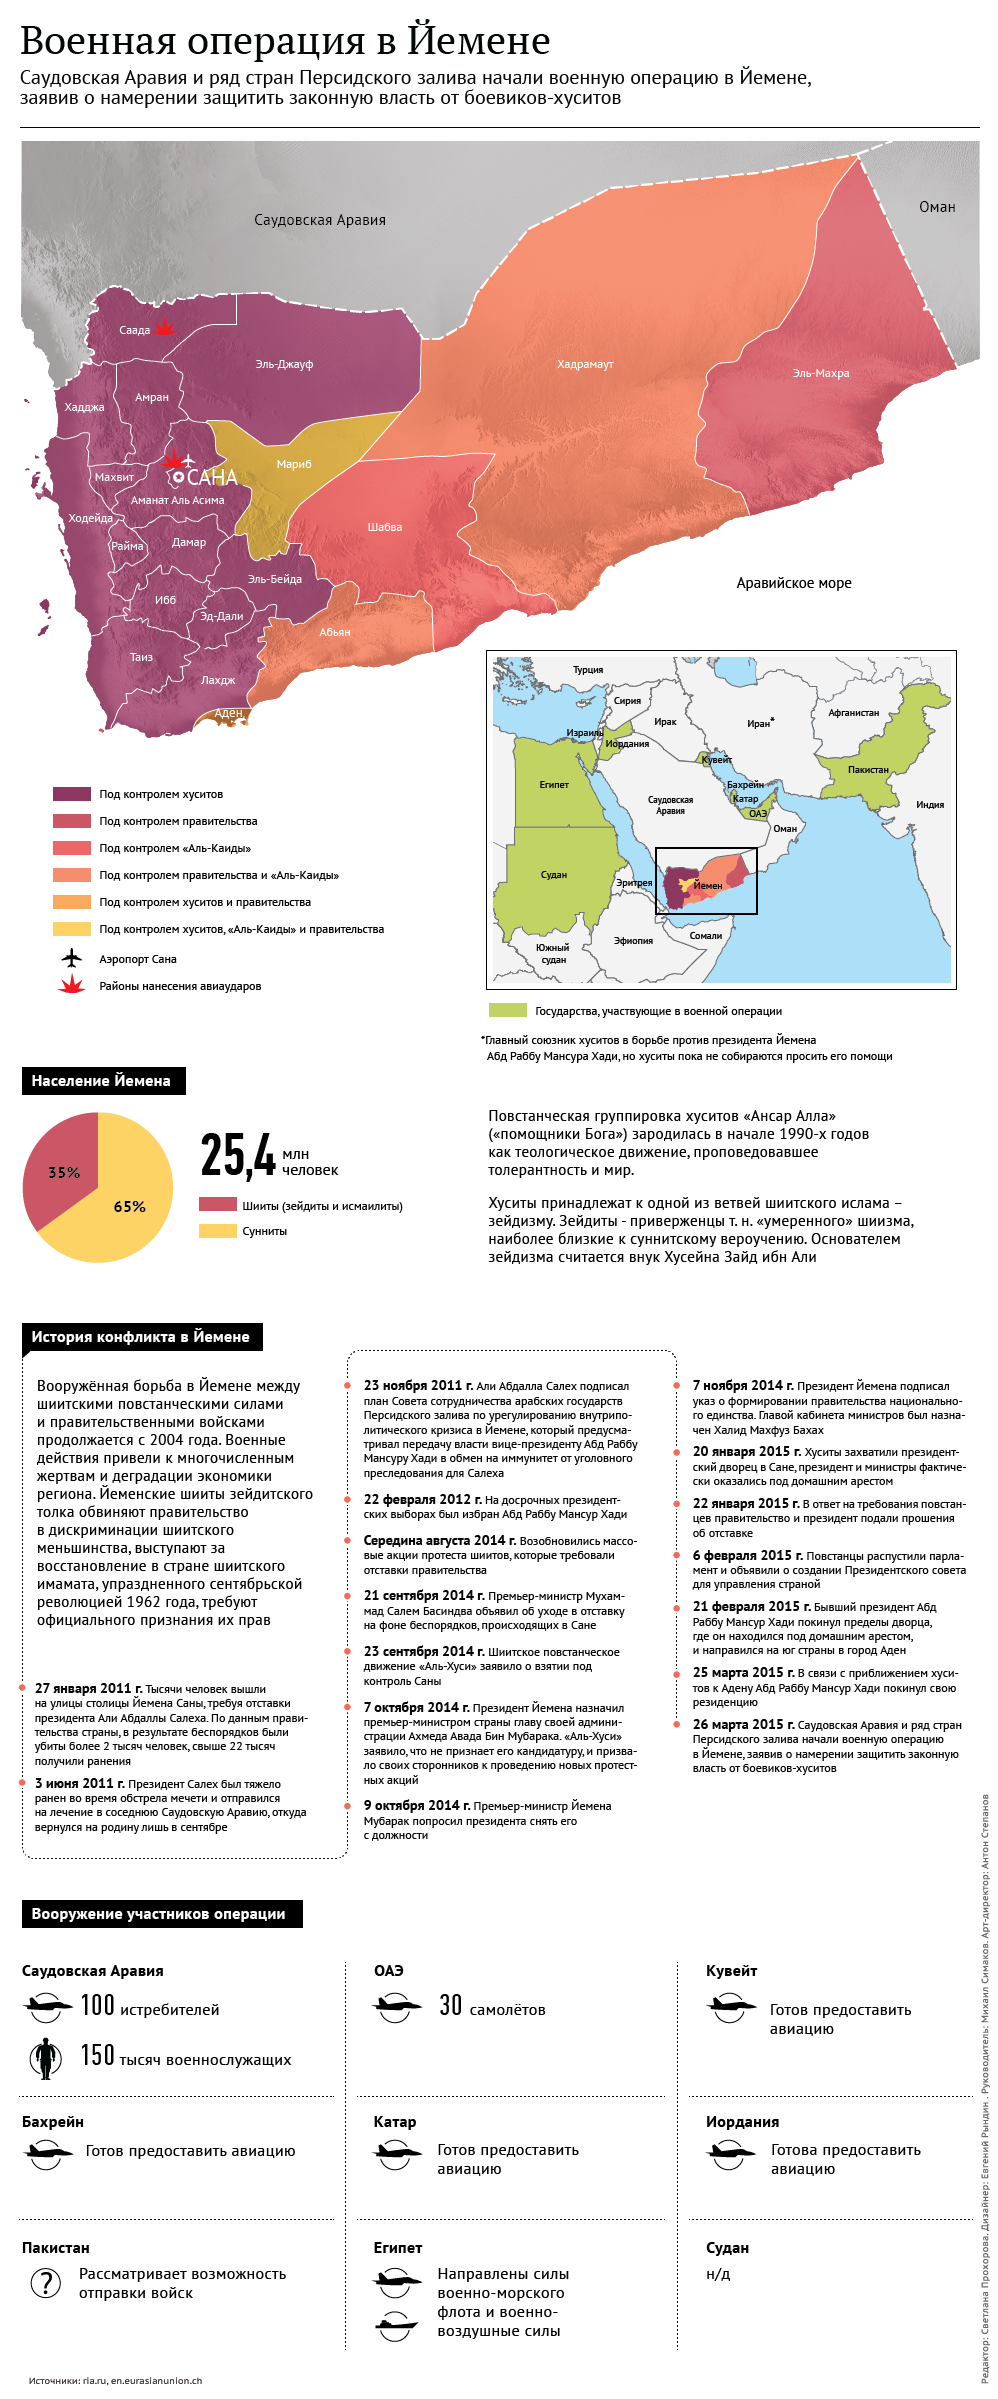 Военная операция в Йемене. Инфографика